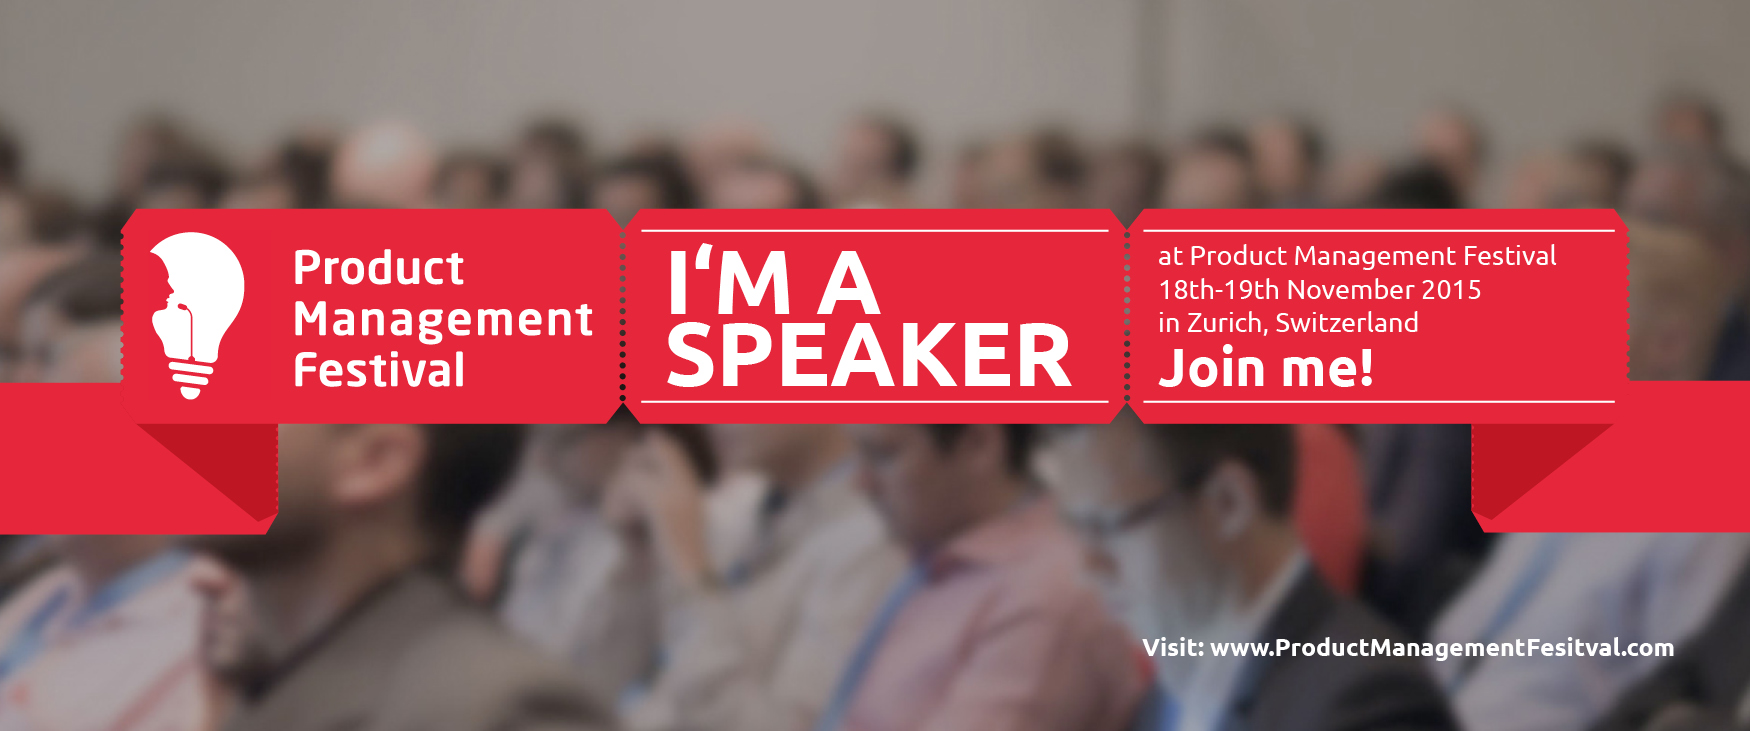 Product Management Festival 2015 speaker banner (Credit: Product Management Festival)